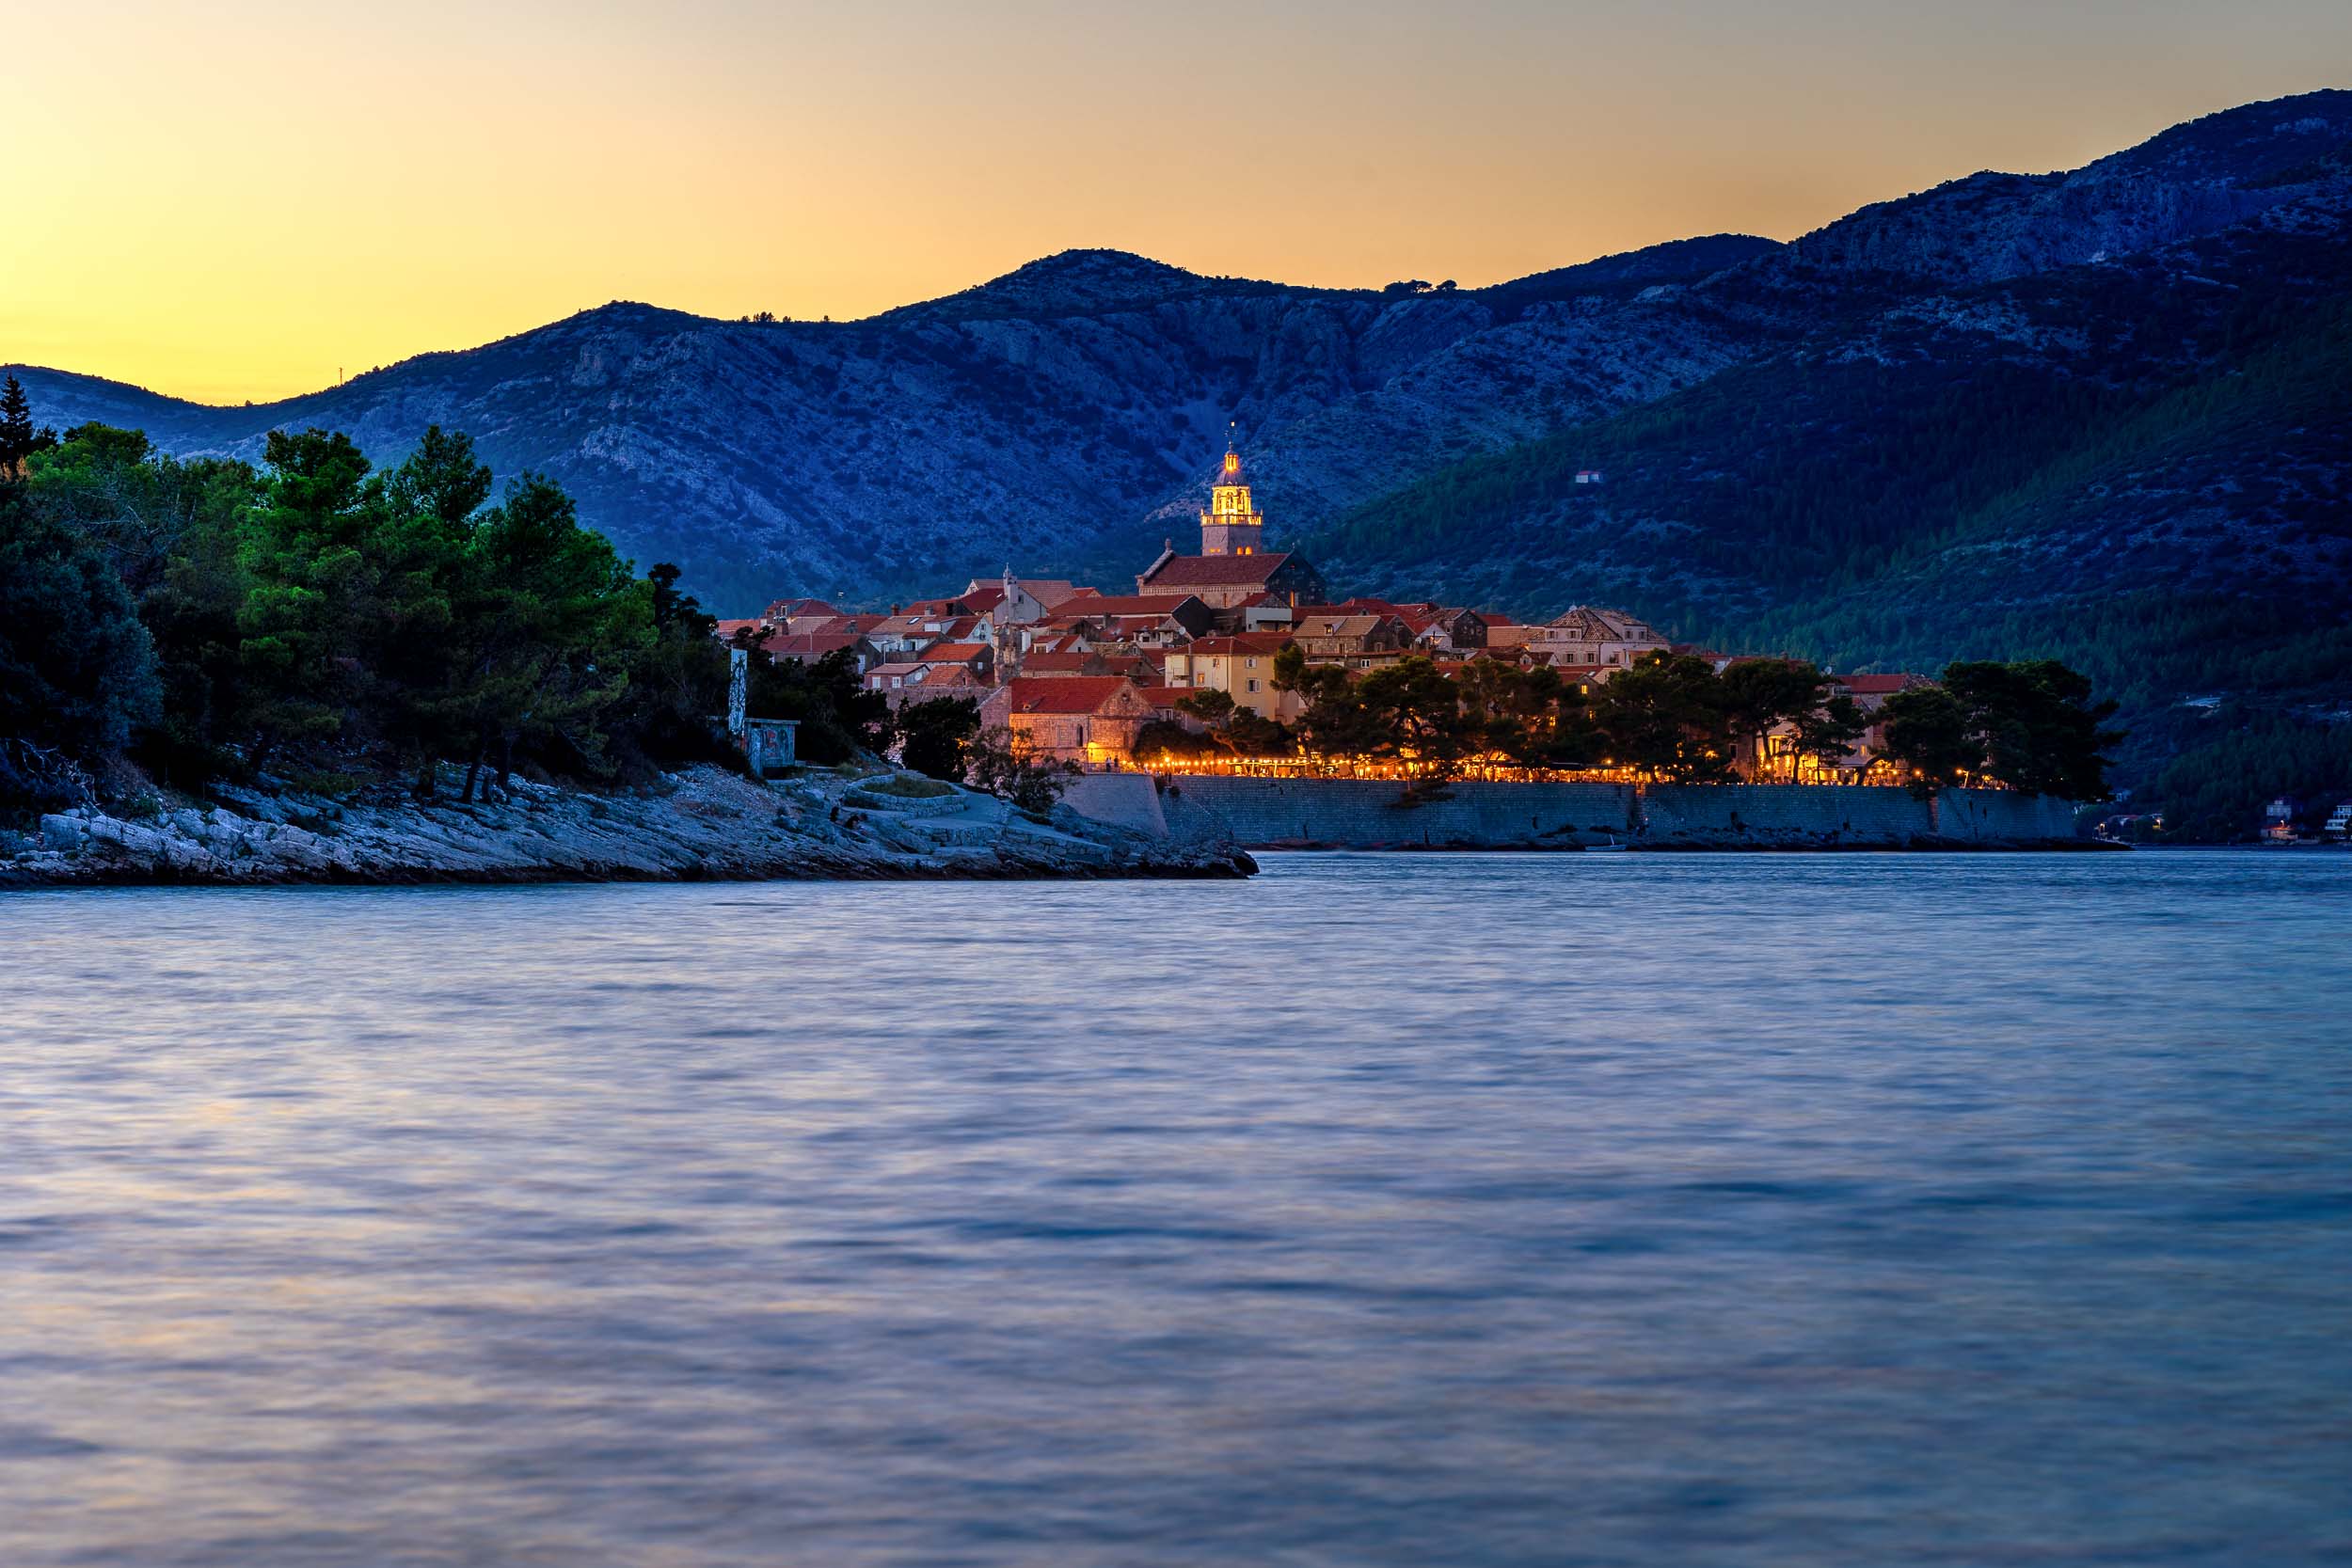 Multimediashow über Dalmatien / Kroatien zwischen Split und Dubrovnik.